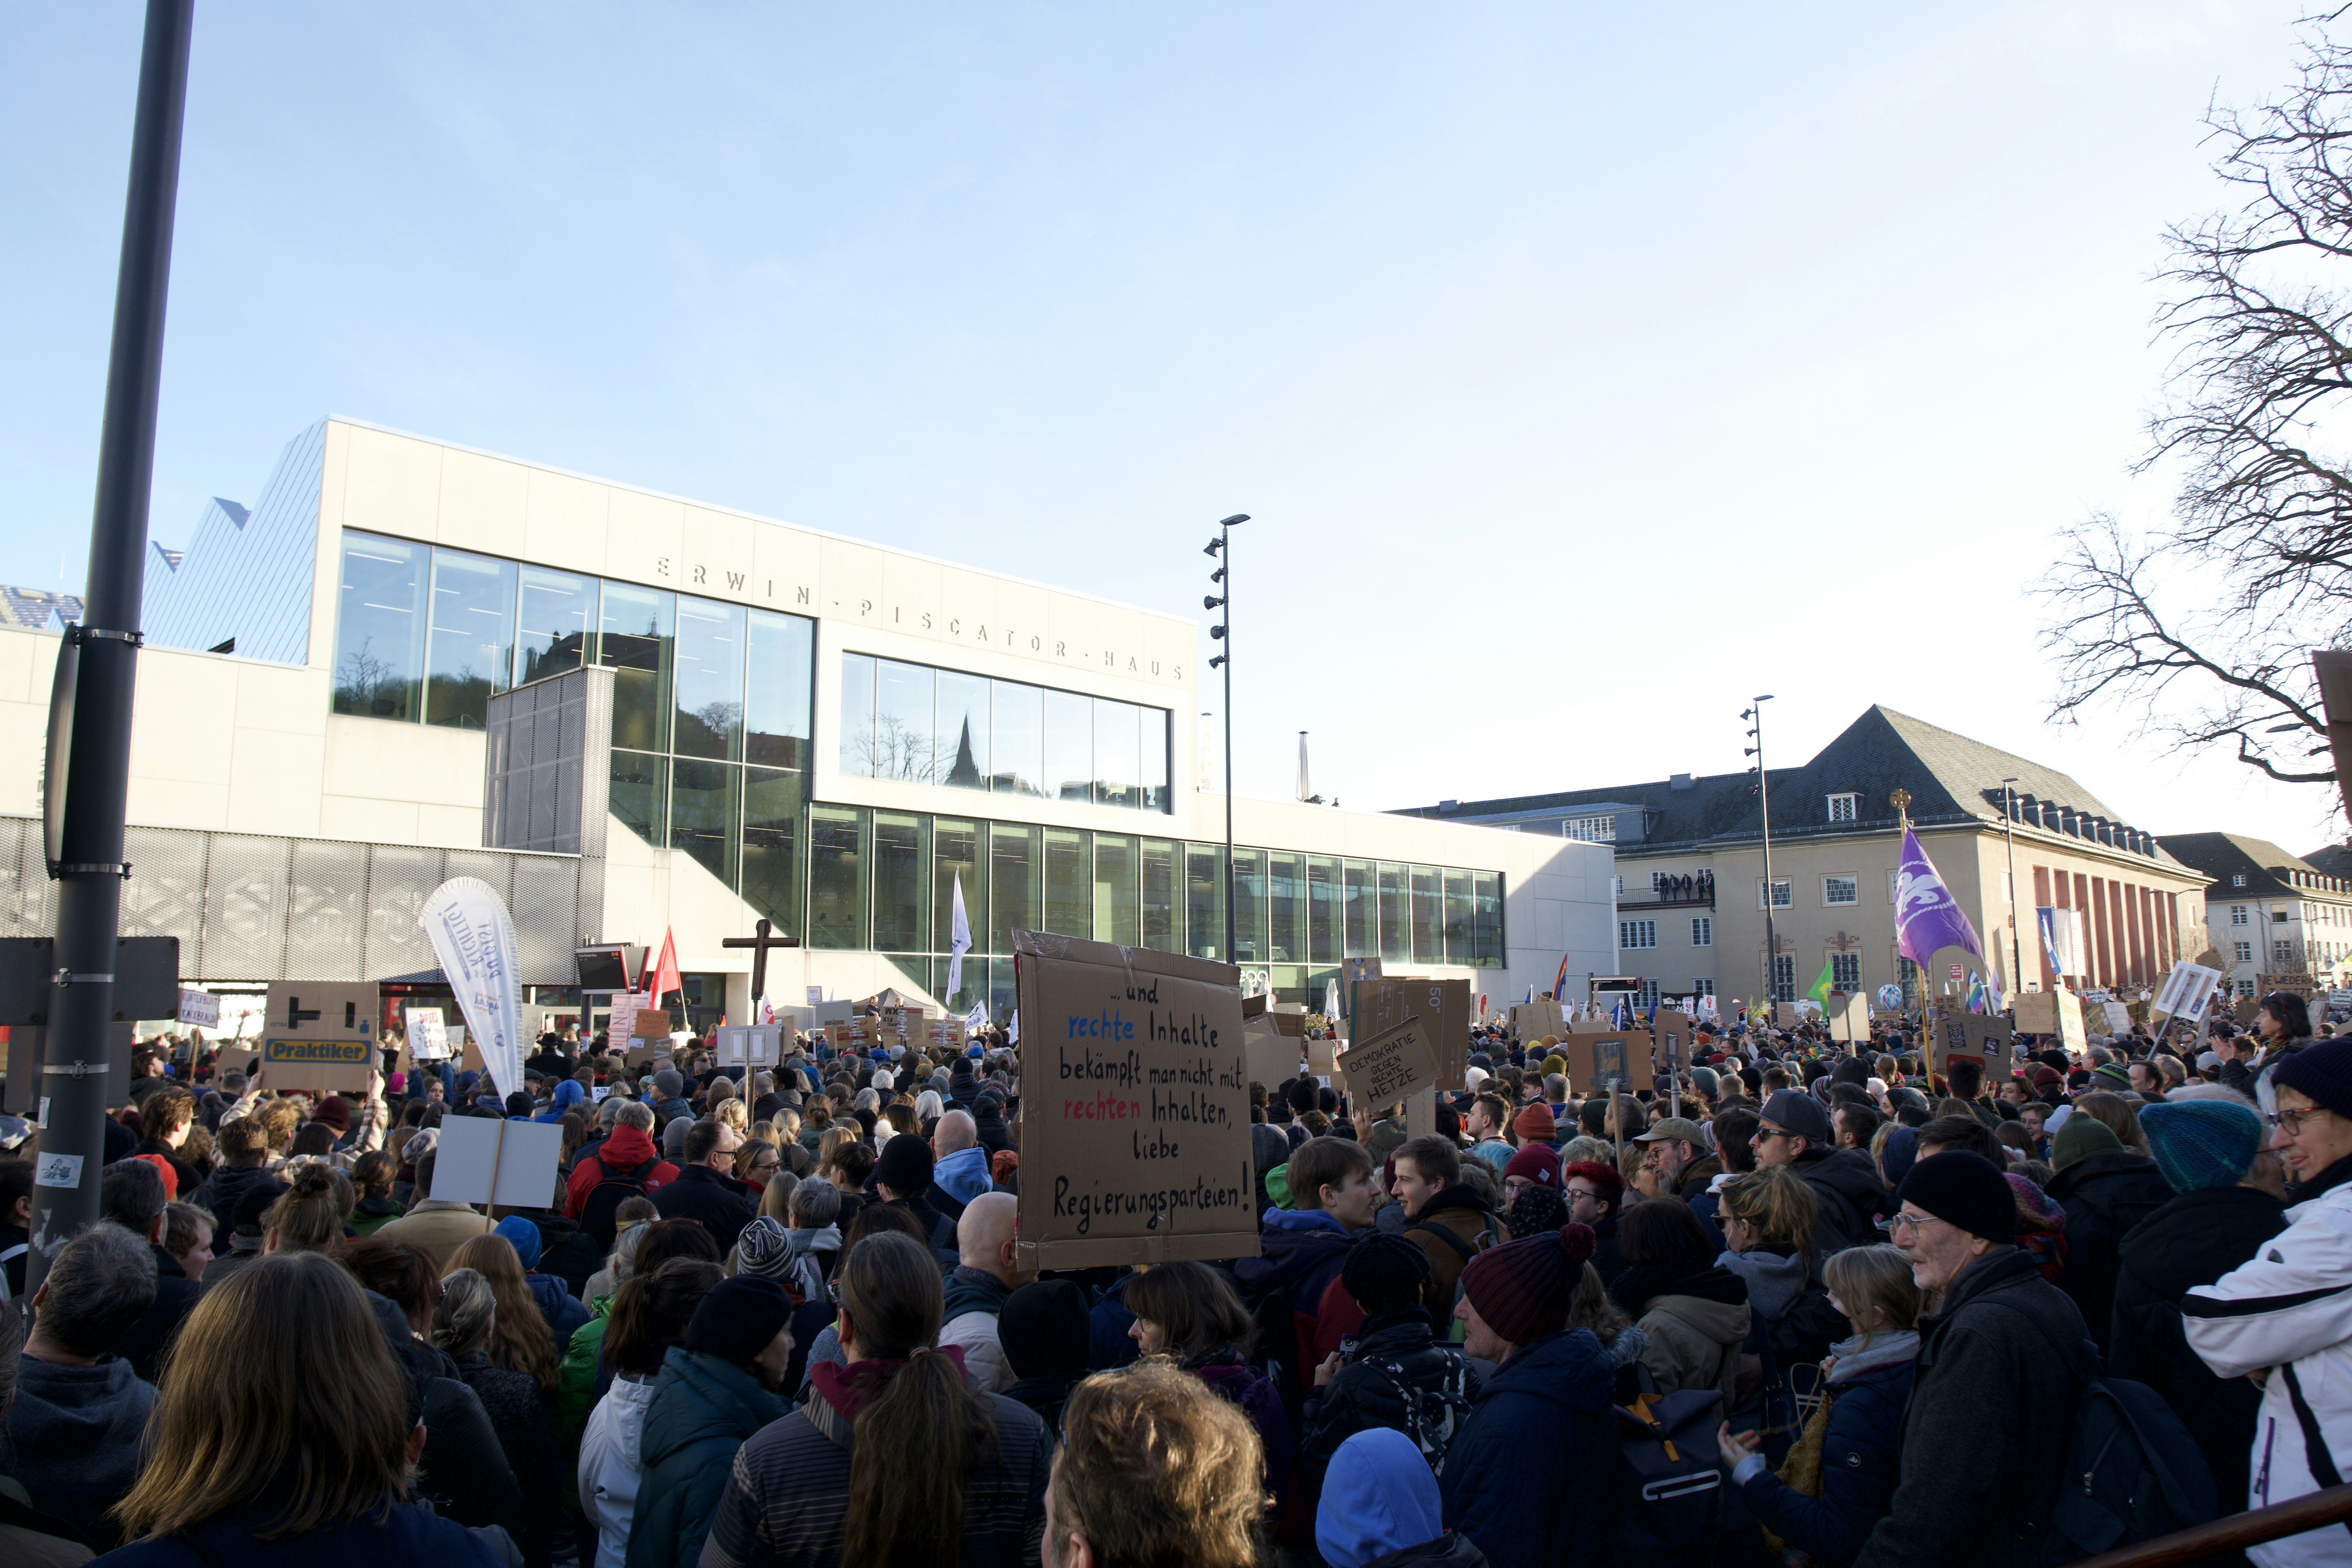 Demonstration gegen die AfD (Alternative für Deutschland) und gegen Rechts in Marburg, Deutschland